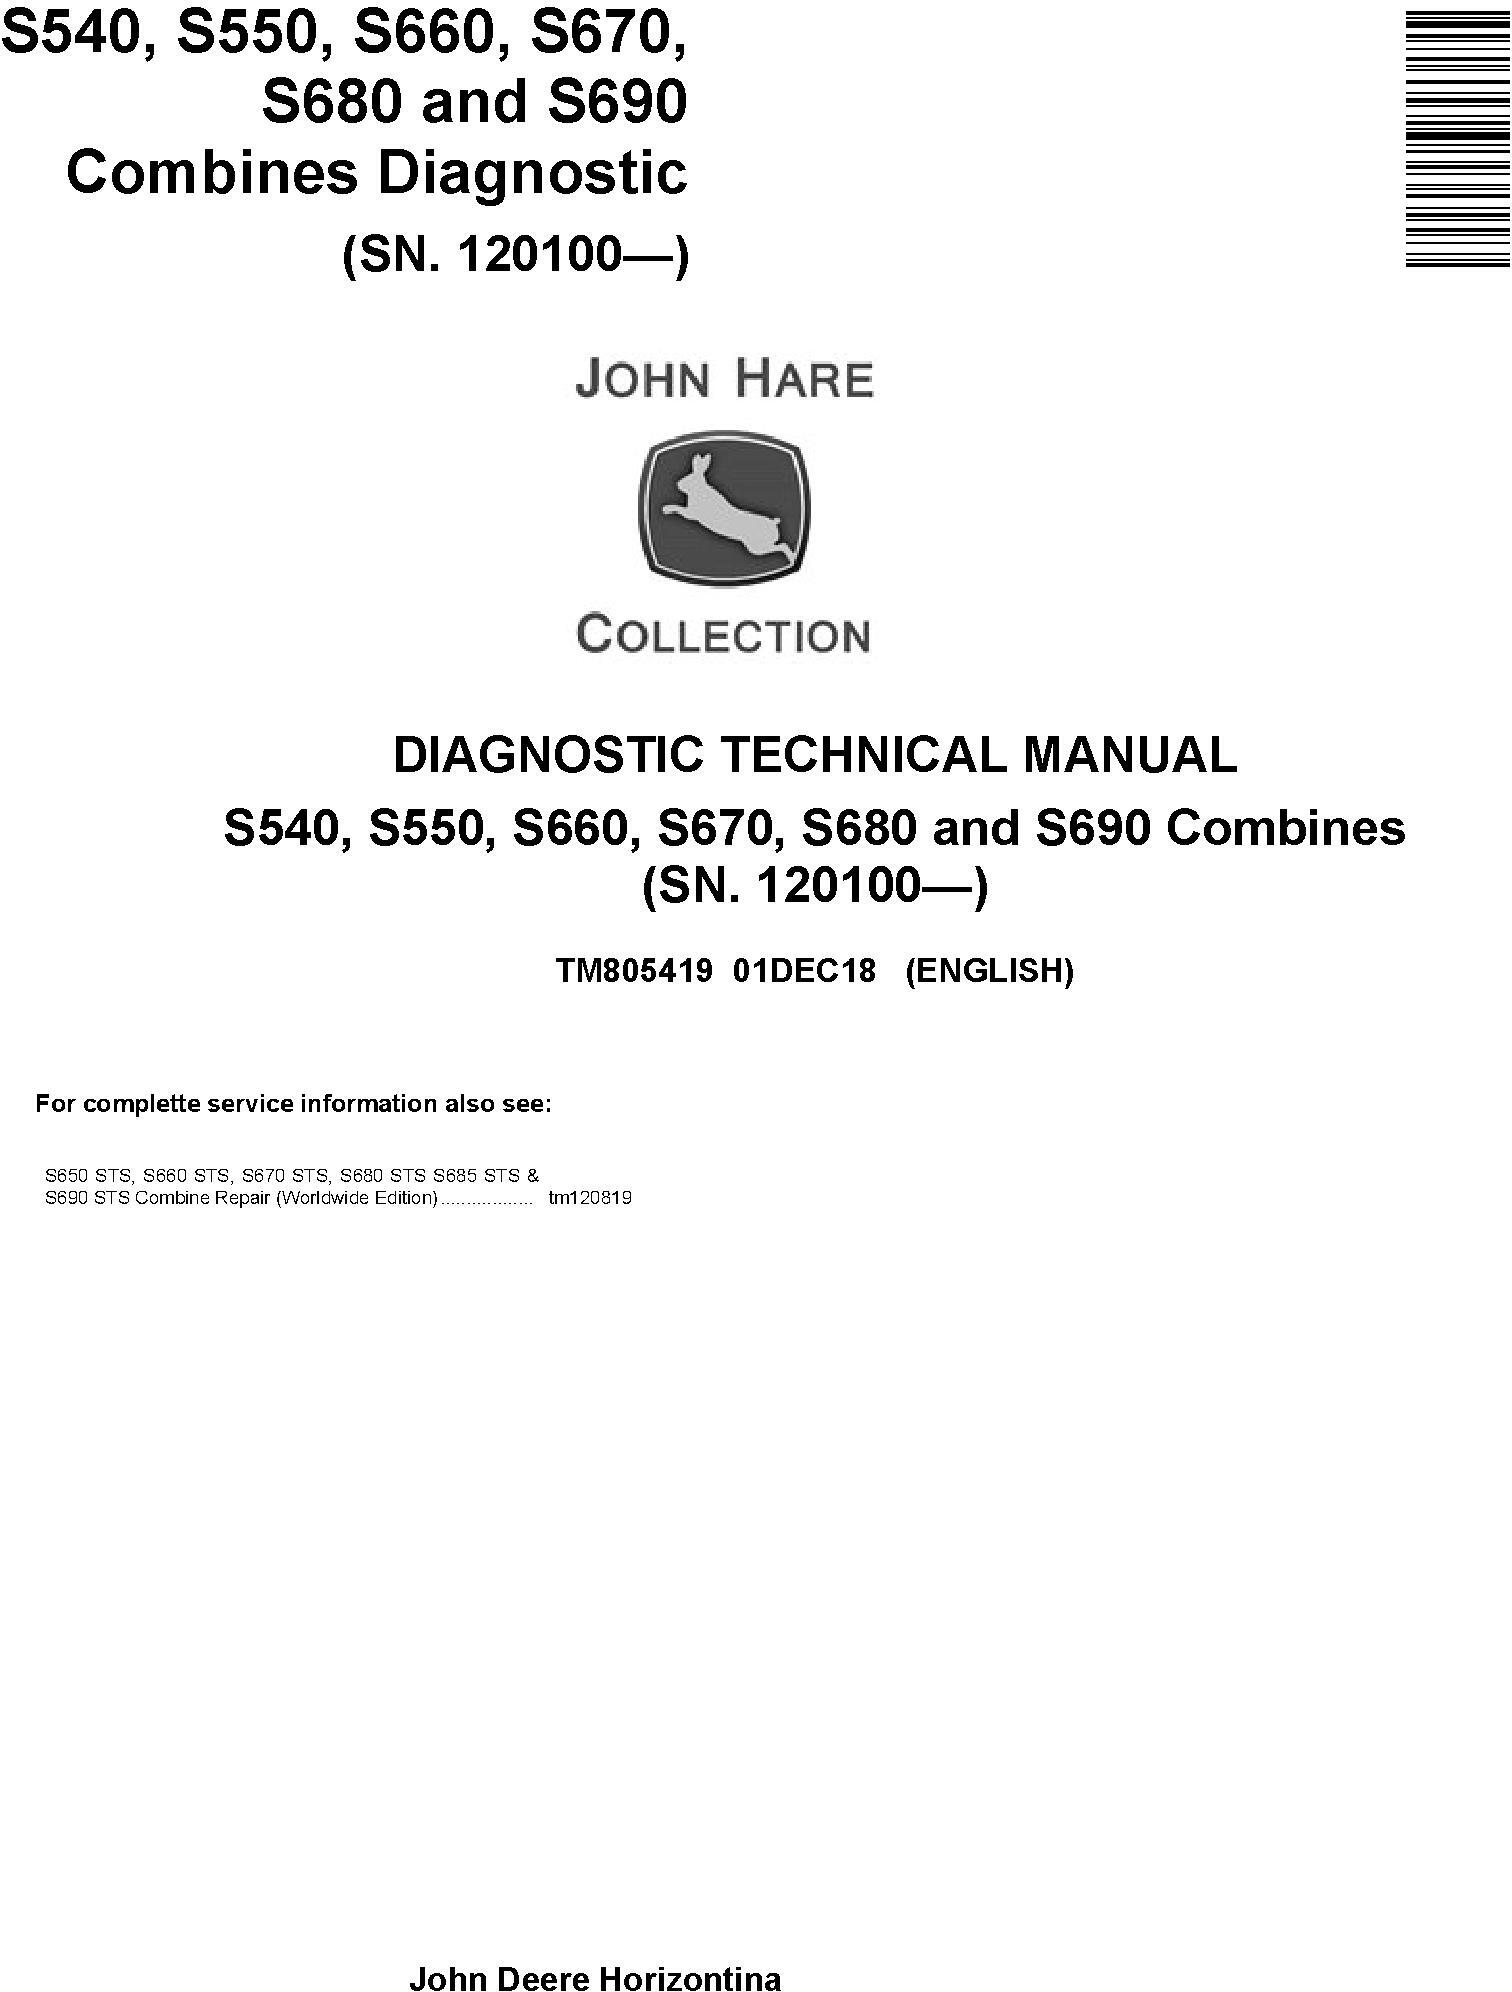 John Deere S540, S550, S660, S670, S680, S690 Combines (SN.120100-) Diagnostic Manual (TM805419)